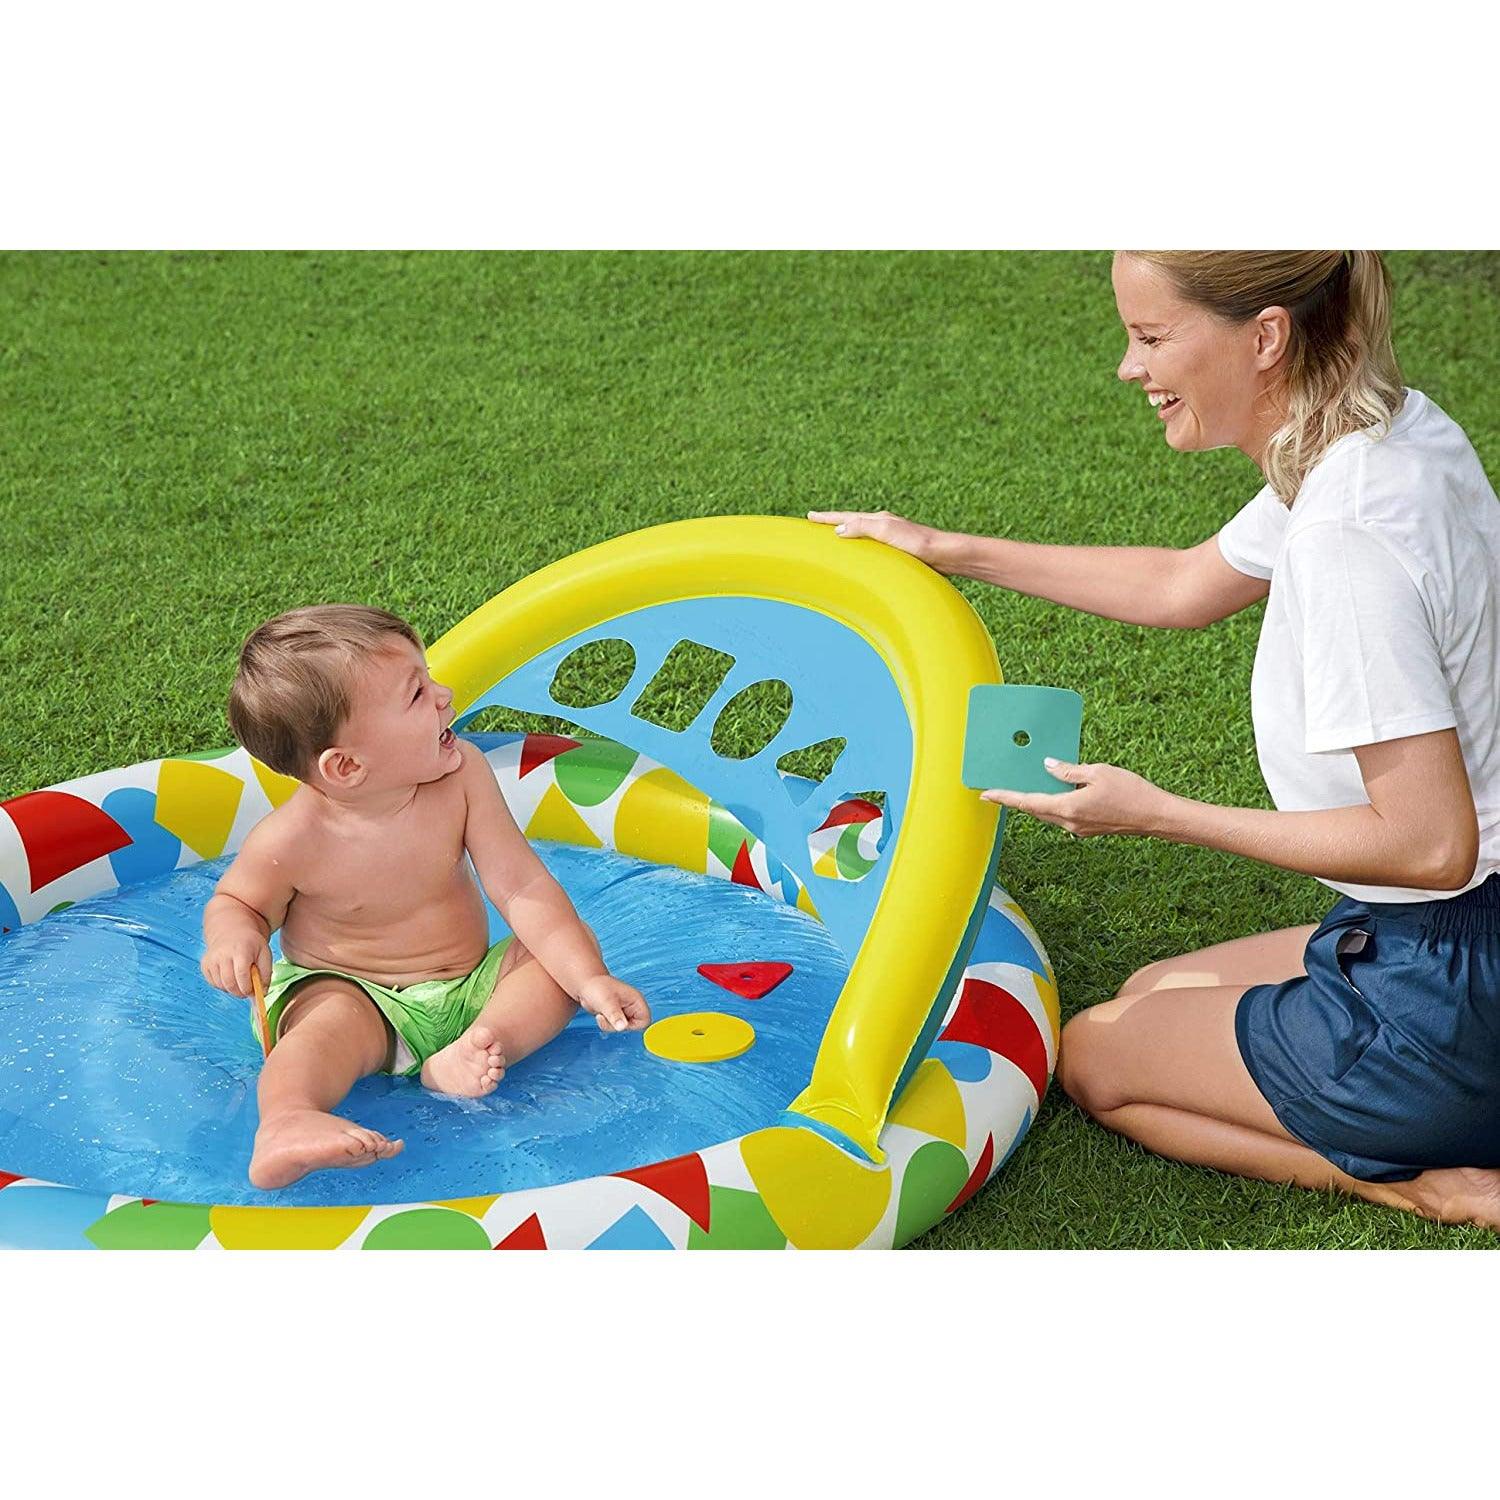 Bestway 52378 Splash & Learn Kiddie Pool‎ 120 x 117 x 46 cm - BumbleToys - 8-13 Years, Bestway, Boys, Eagle Plus, Floaters, Island, Pre-Order, Sand Toys Pools & Inflatables